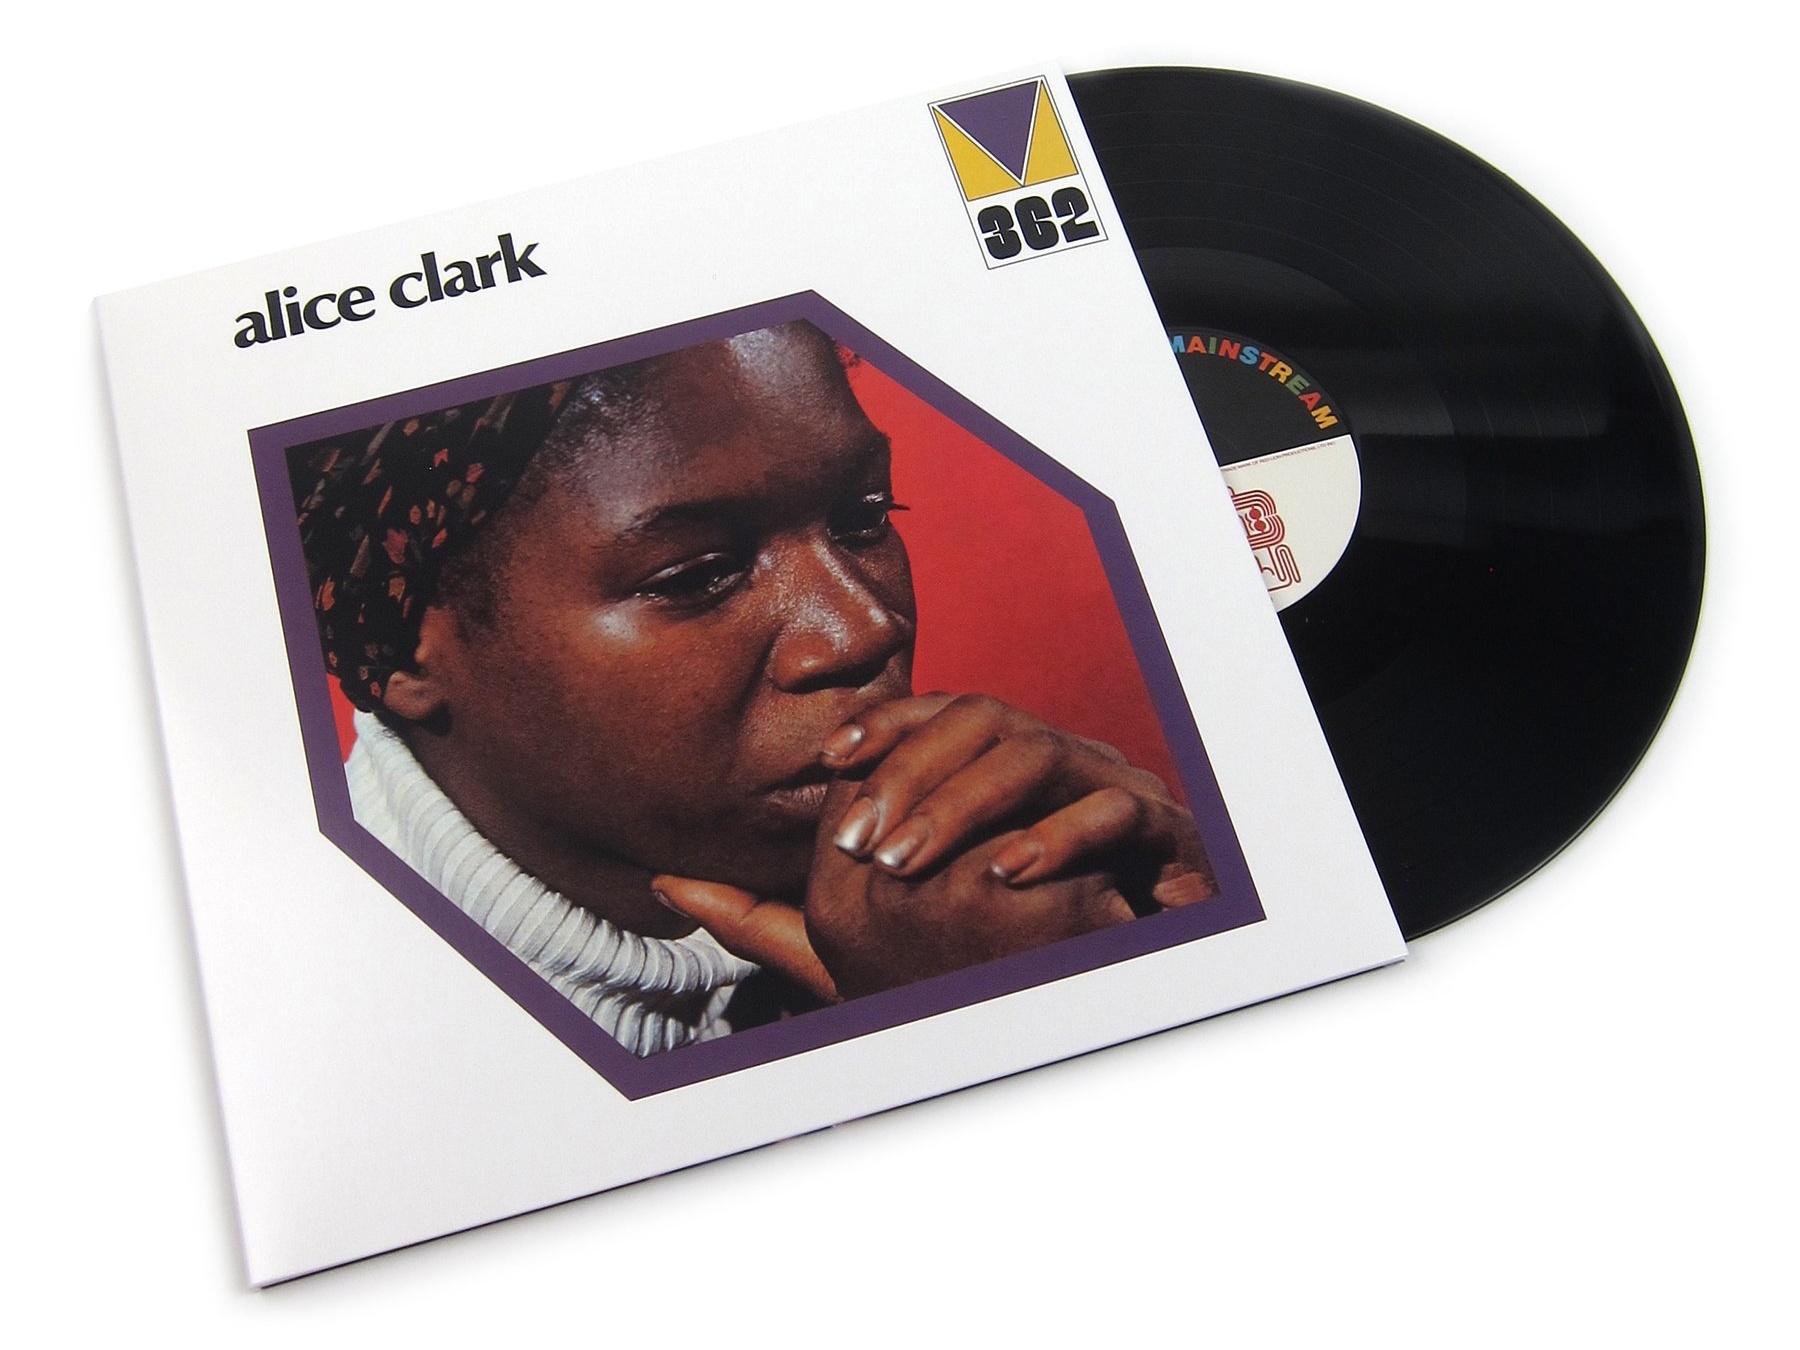 Alice Clark - "Alice Clark" vinyl LP